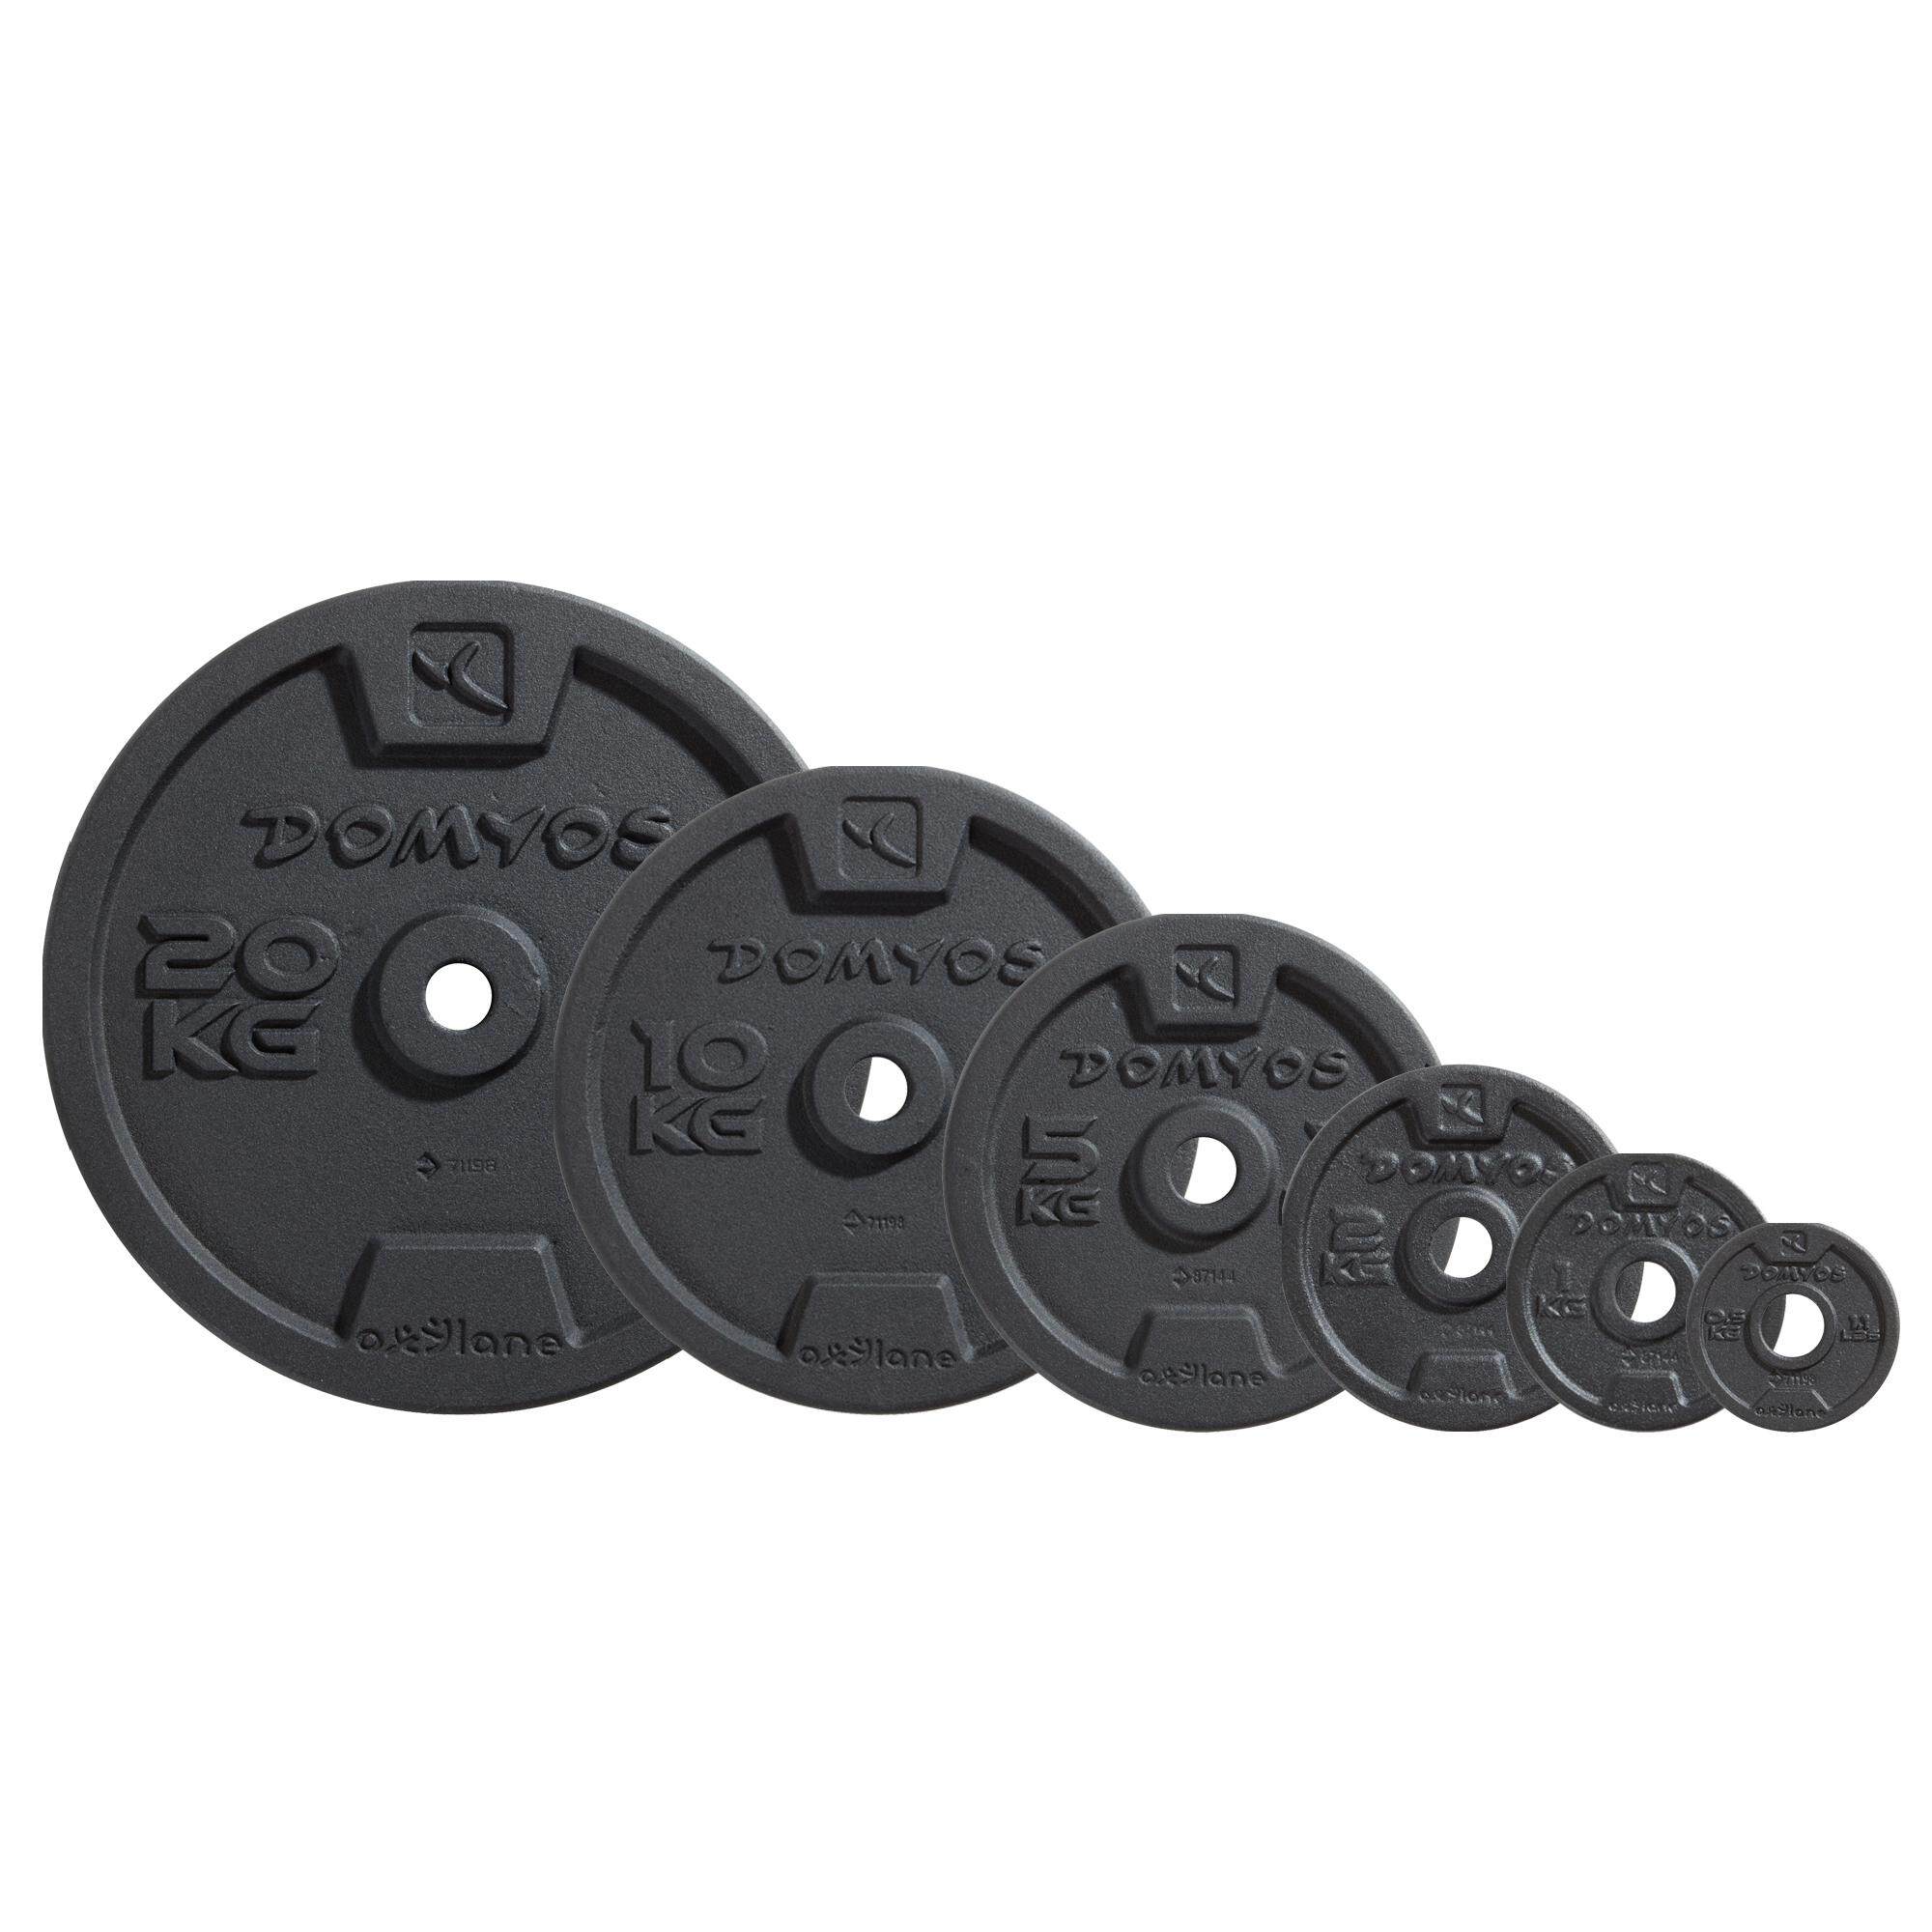 [ส่งฟรี ] แผ่นน้ำหนัก ดัมเบล  บาร์เบล เวทเหล็กหล่อแผ่นกลม 28 มม. 0.5 kg x 1 pcs Cast Iron Weight Training Disc Weight 28mm 0.5 kgx 1 pcs Weight training Equipment Dumbbell BarBell Set ชุดยกน้ำหนัก ยกน้ำหนักเหล็ก ดัมเบล